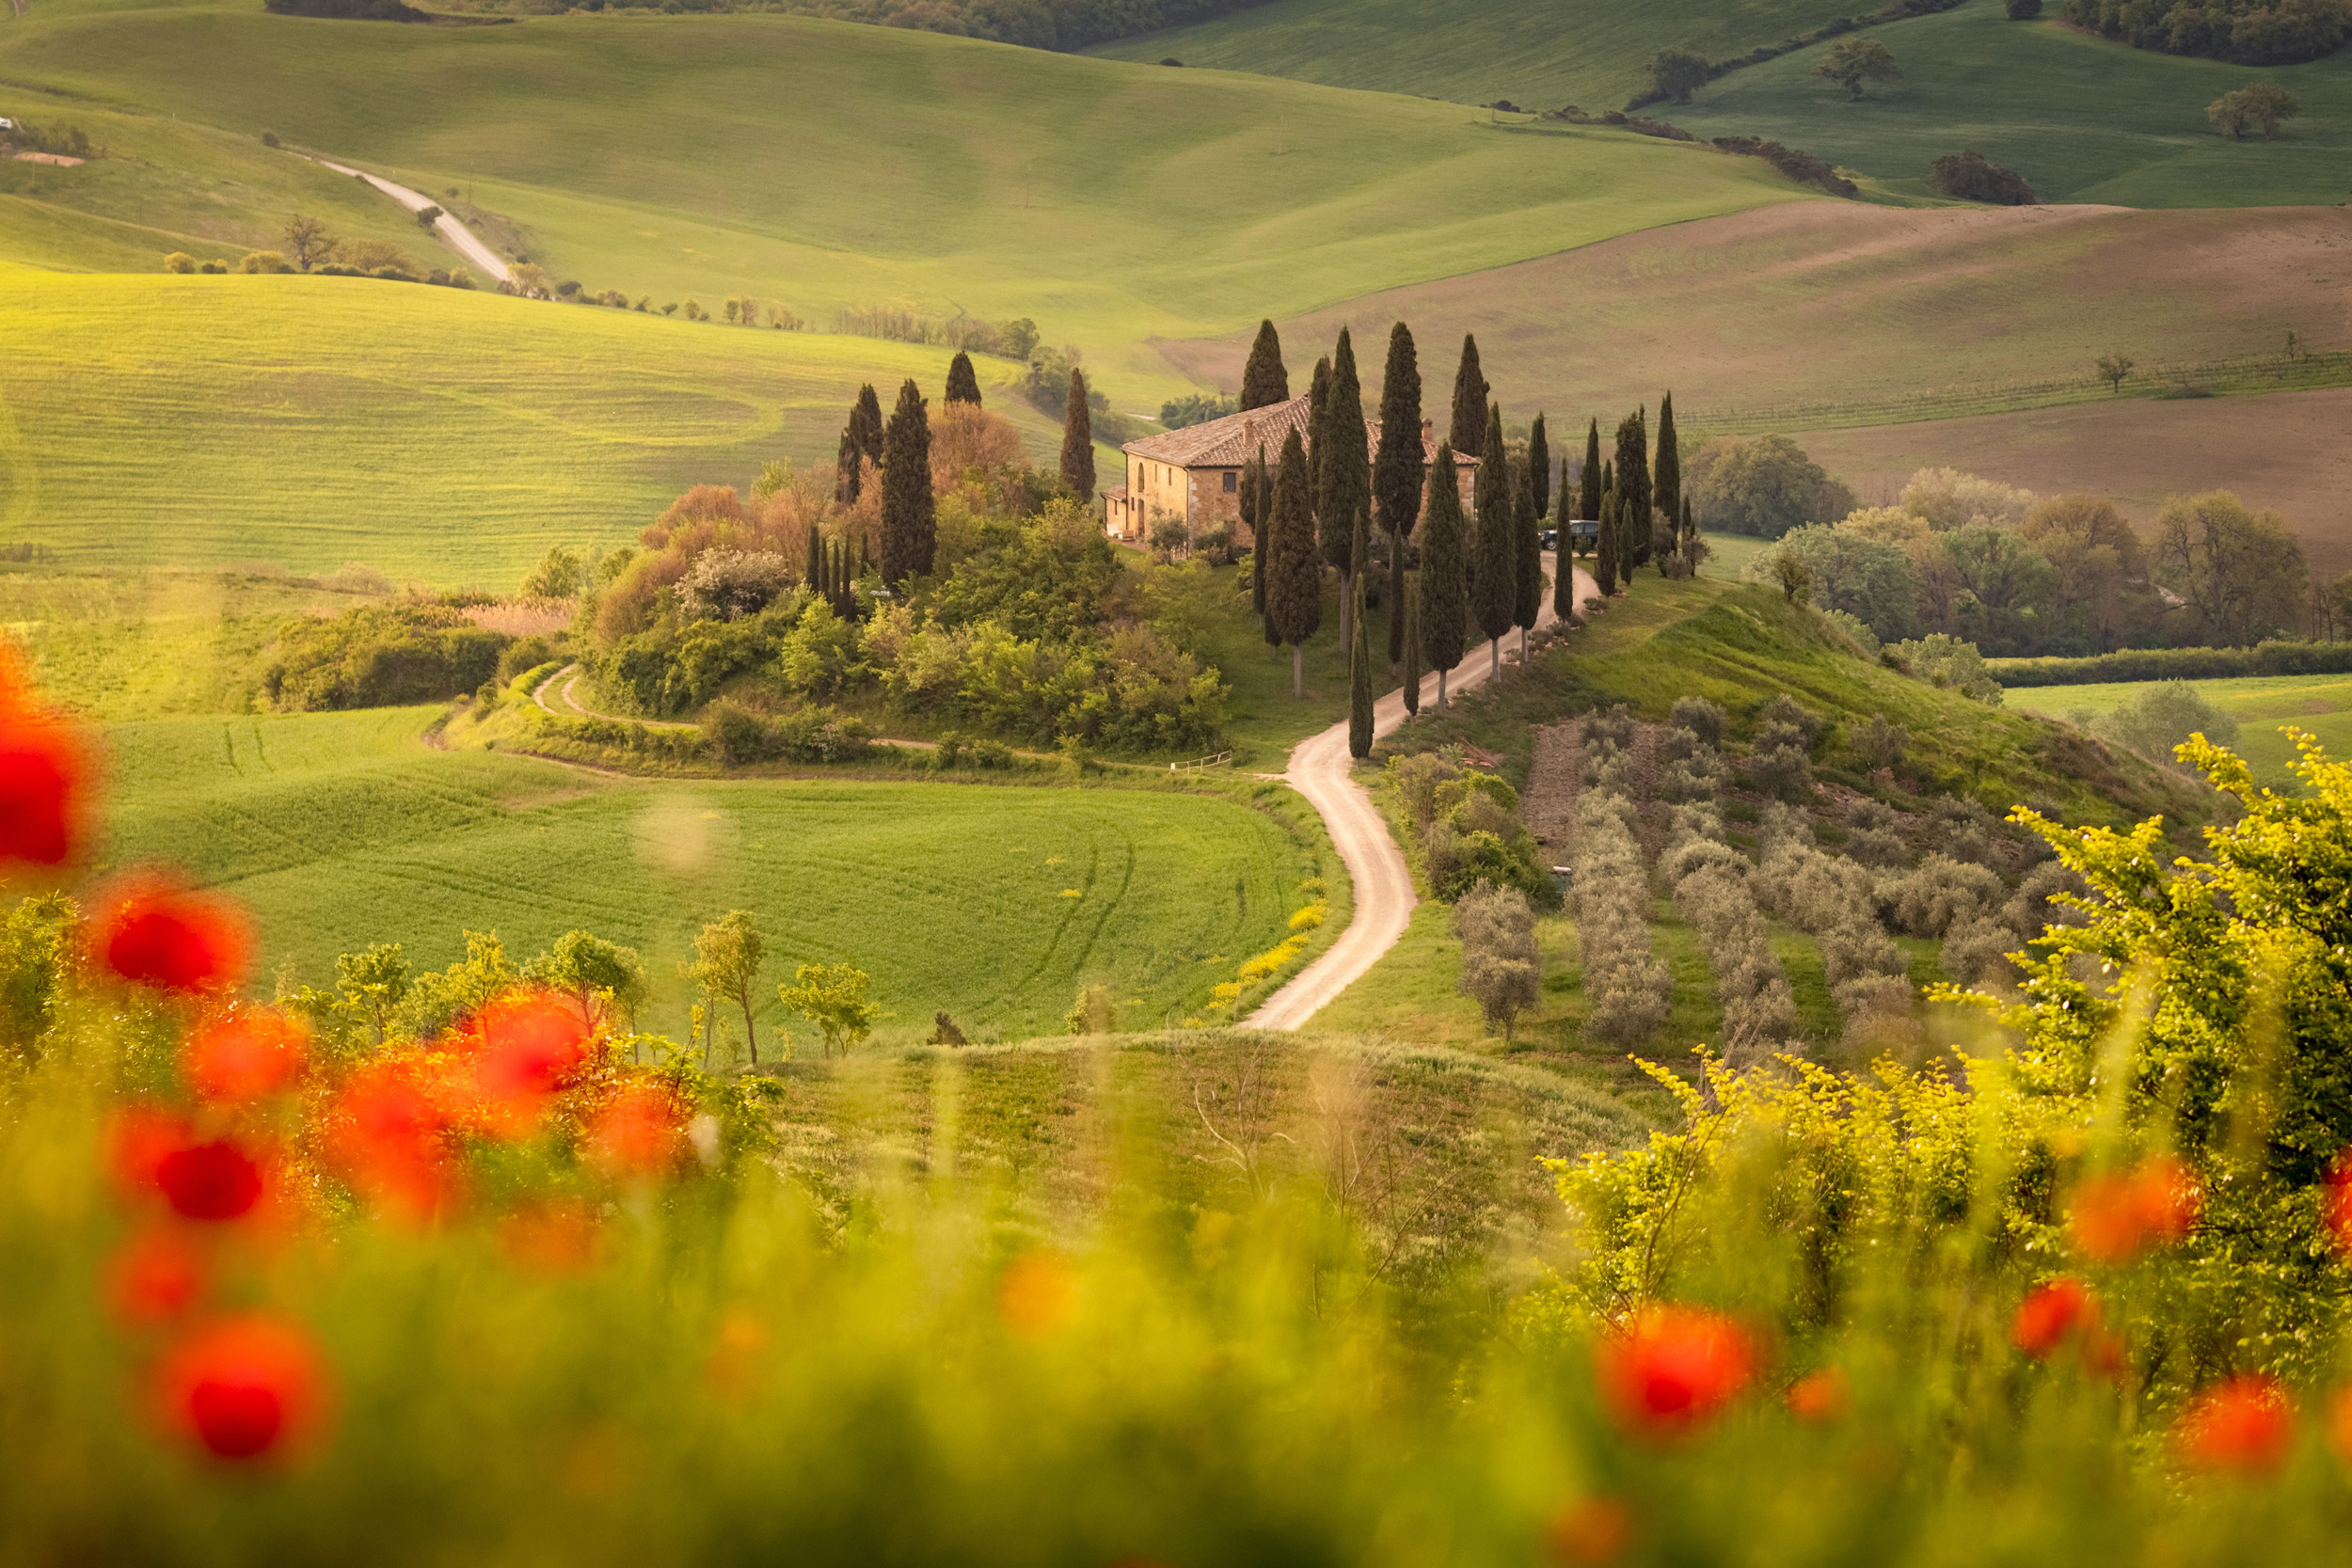 Poppy flower field in beautiful landscape scenery of Tuscany in